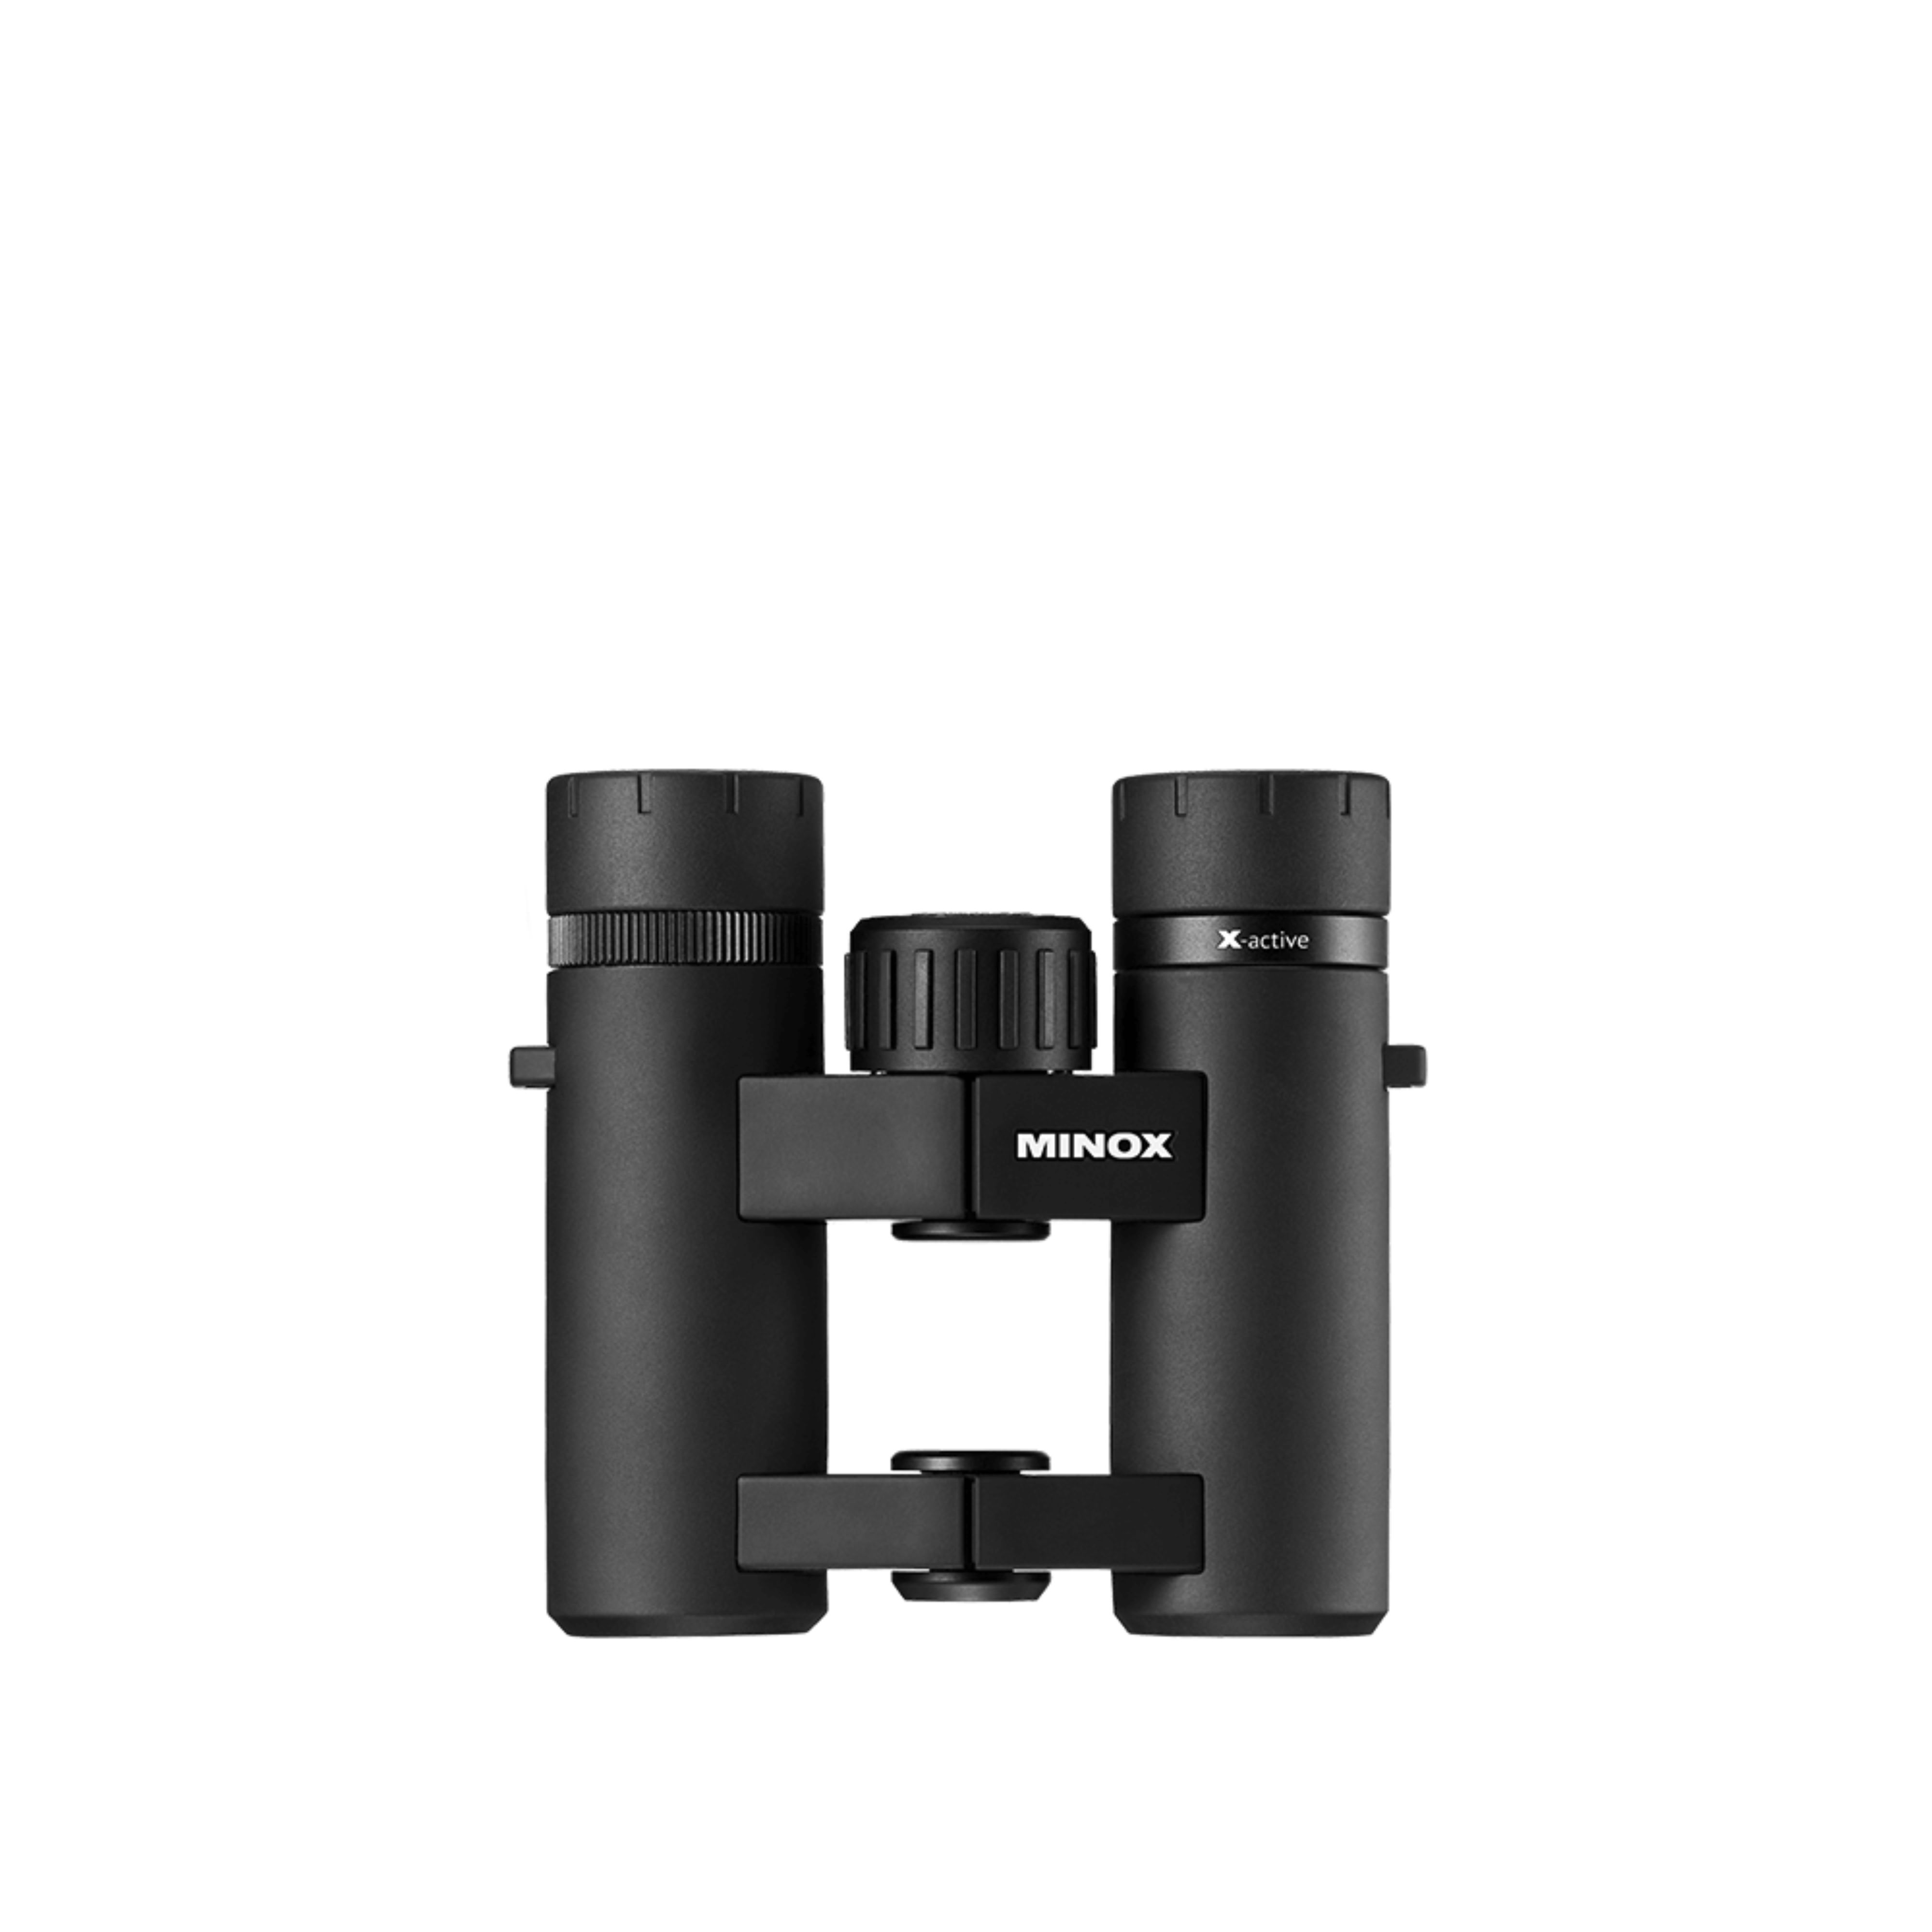 MINOX Binocular X-active 10x25